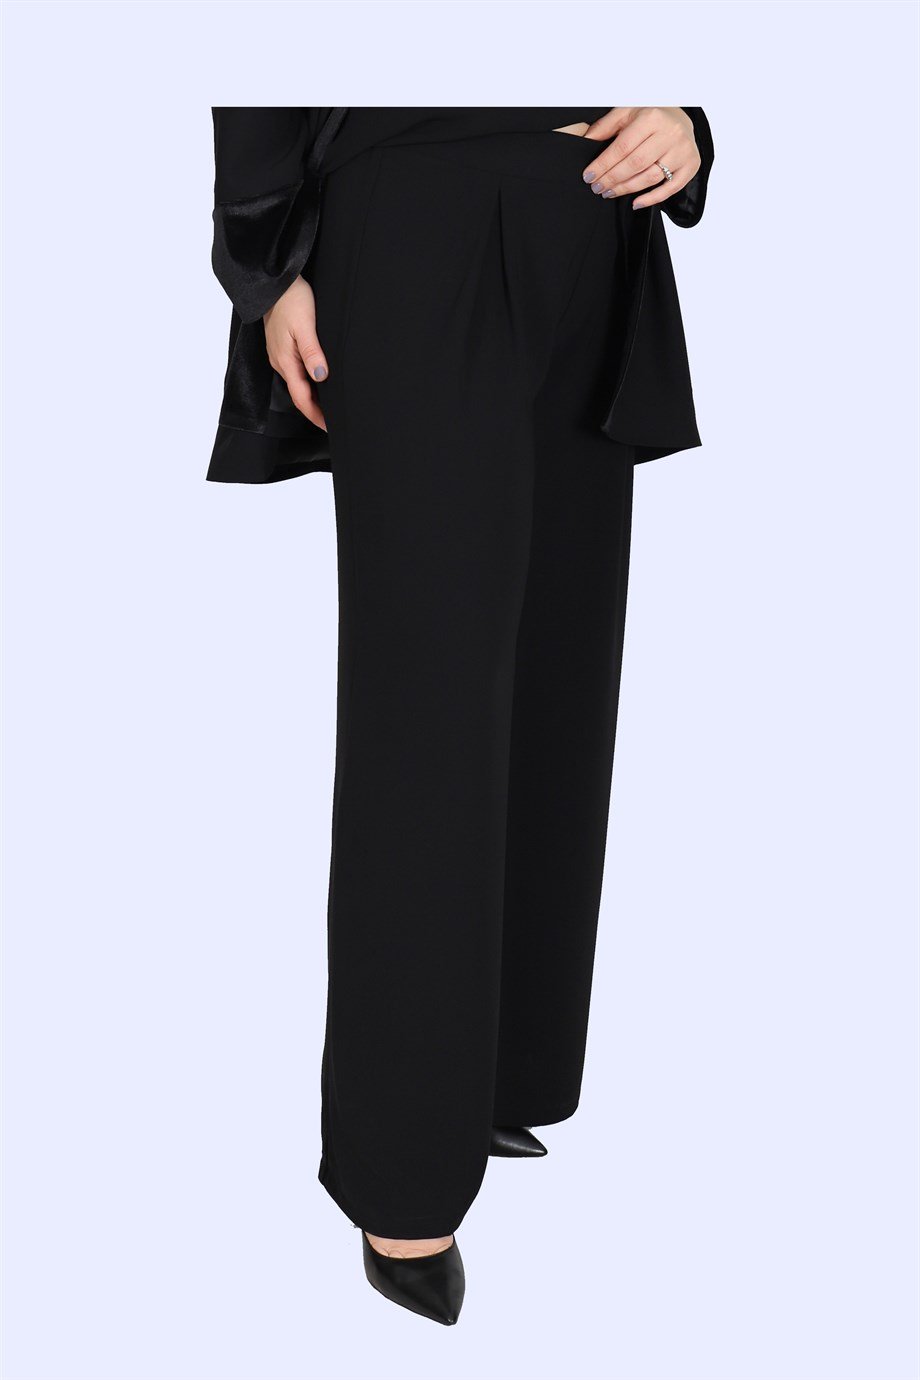 Büyük Beden Aruz Pantolon Siyah | Bedrinxxl | Büyük Beden Abiye Elbise,  Tunik, Genç Buyuk Beden Elbise Tesettür Modelleri ve Fiyatları